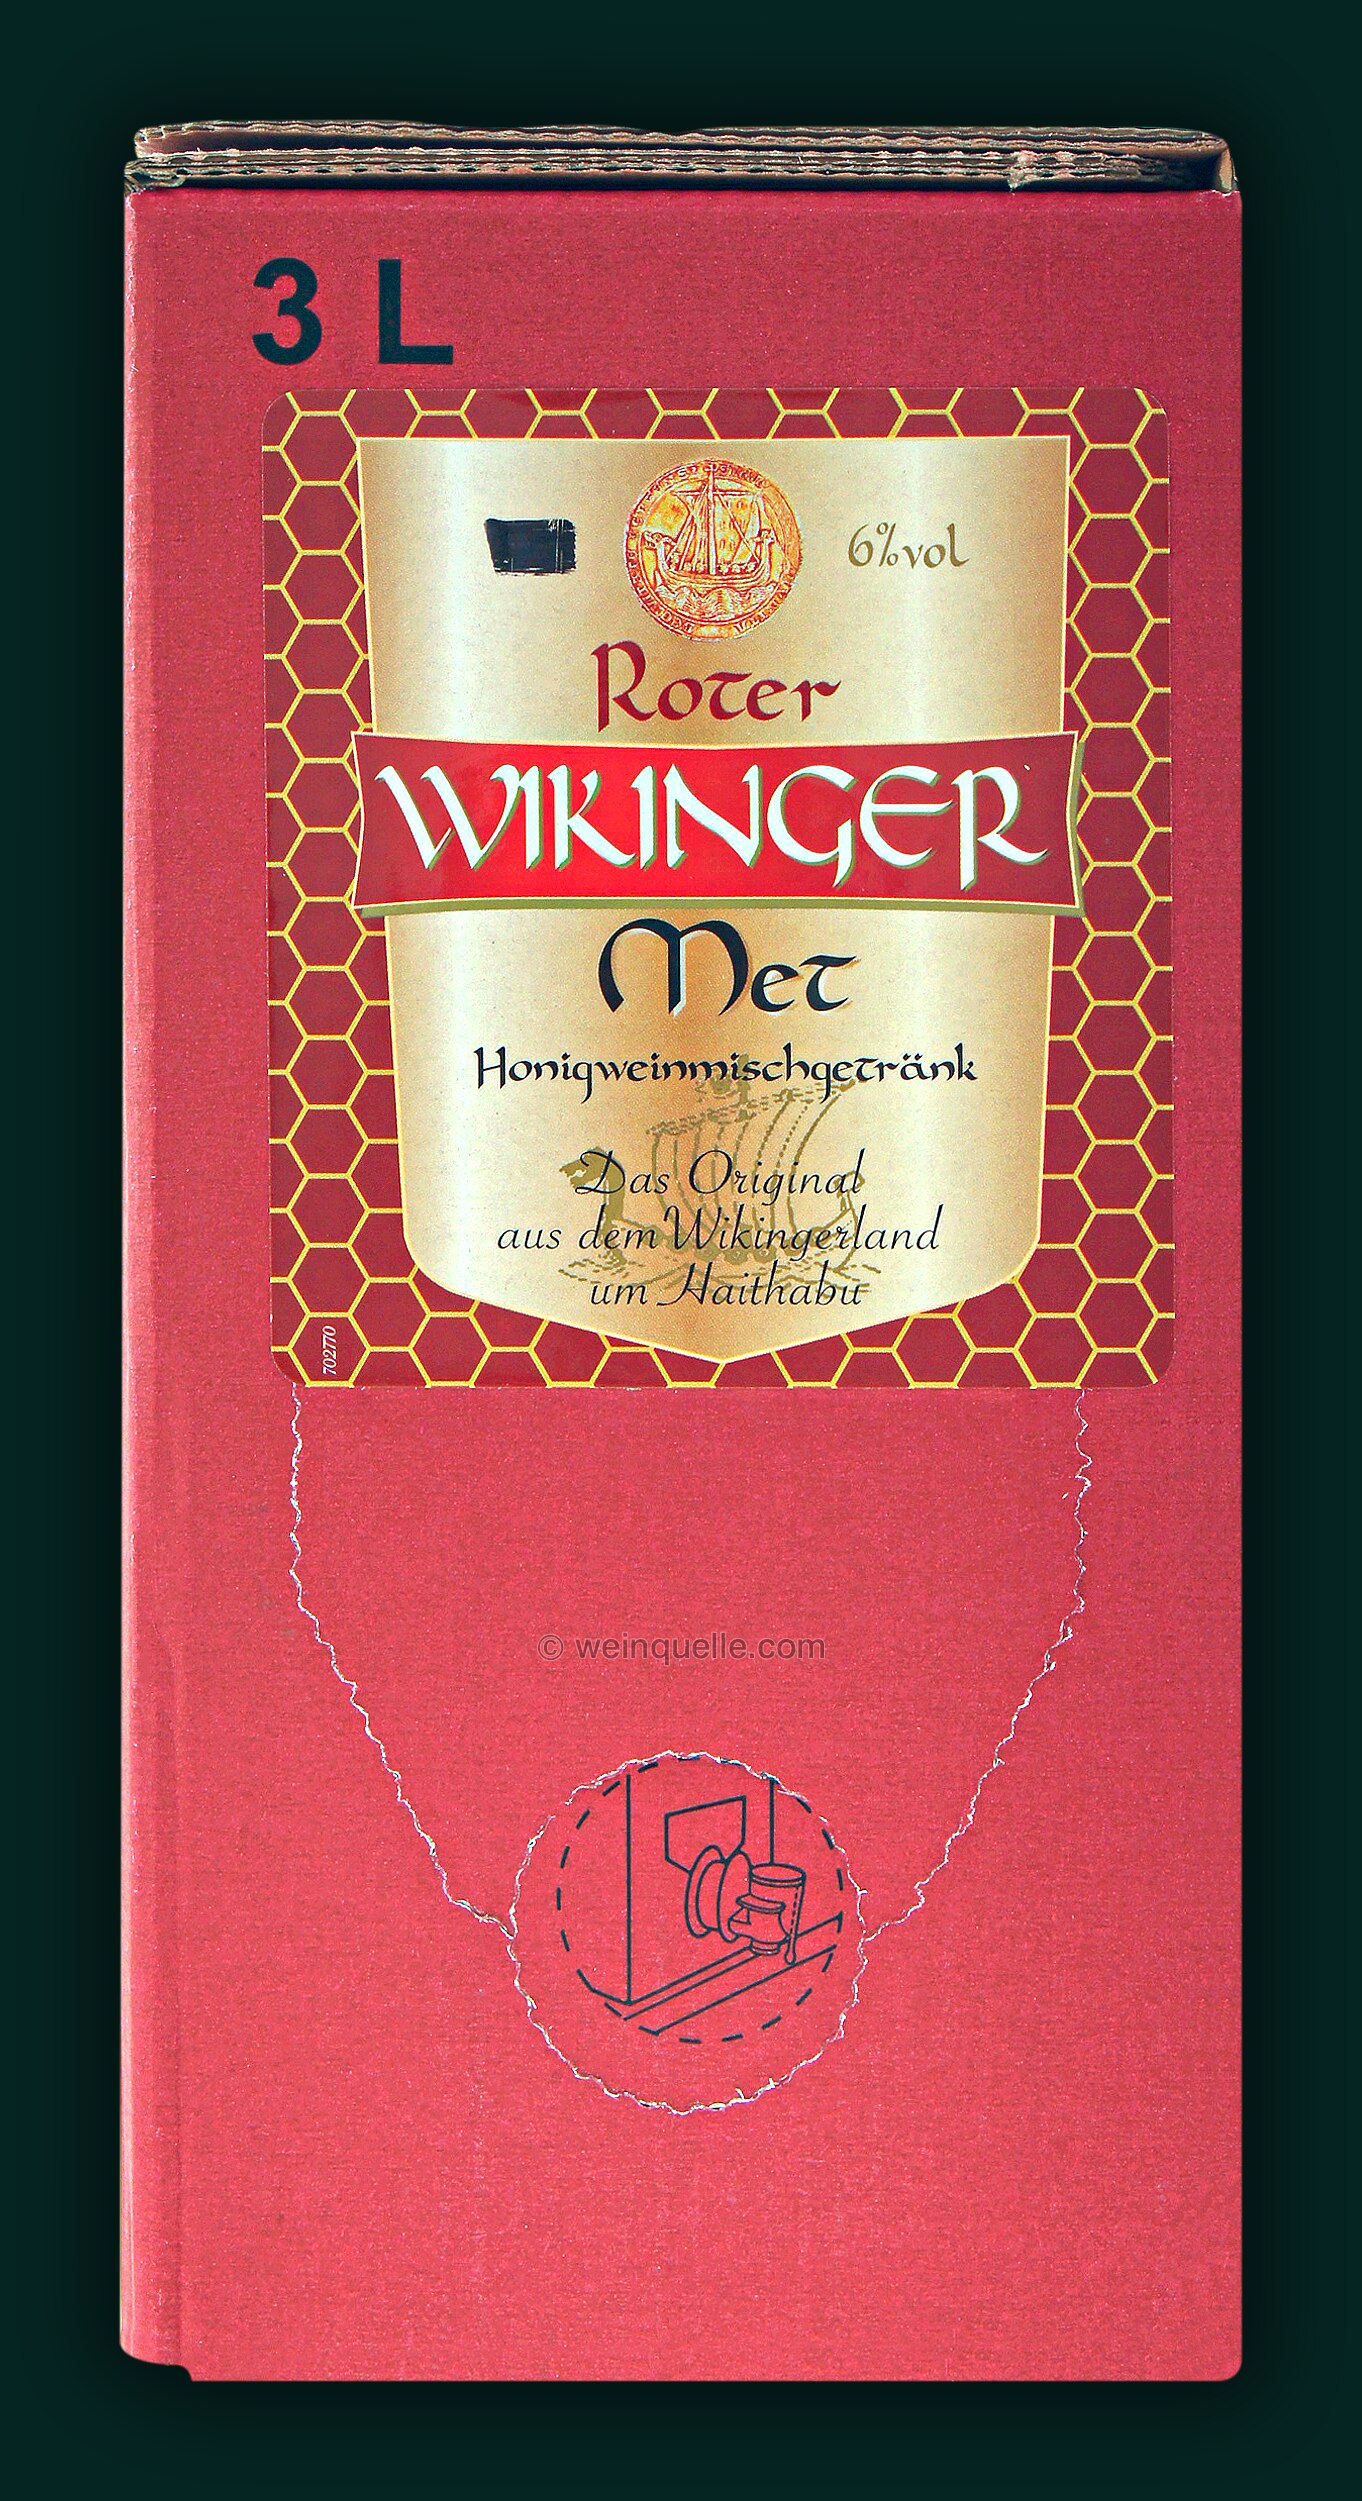 Met Roter Kirschsaft) Box, (Honigwein 23,95 Bag Wikinger mit - in Liter Met 3,0 € Lühmann Weinquelle